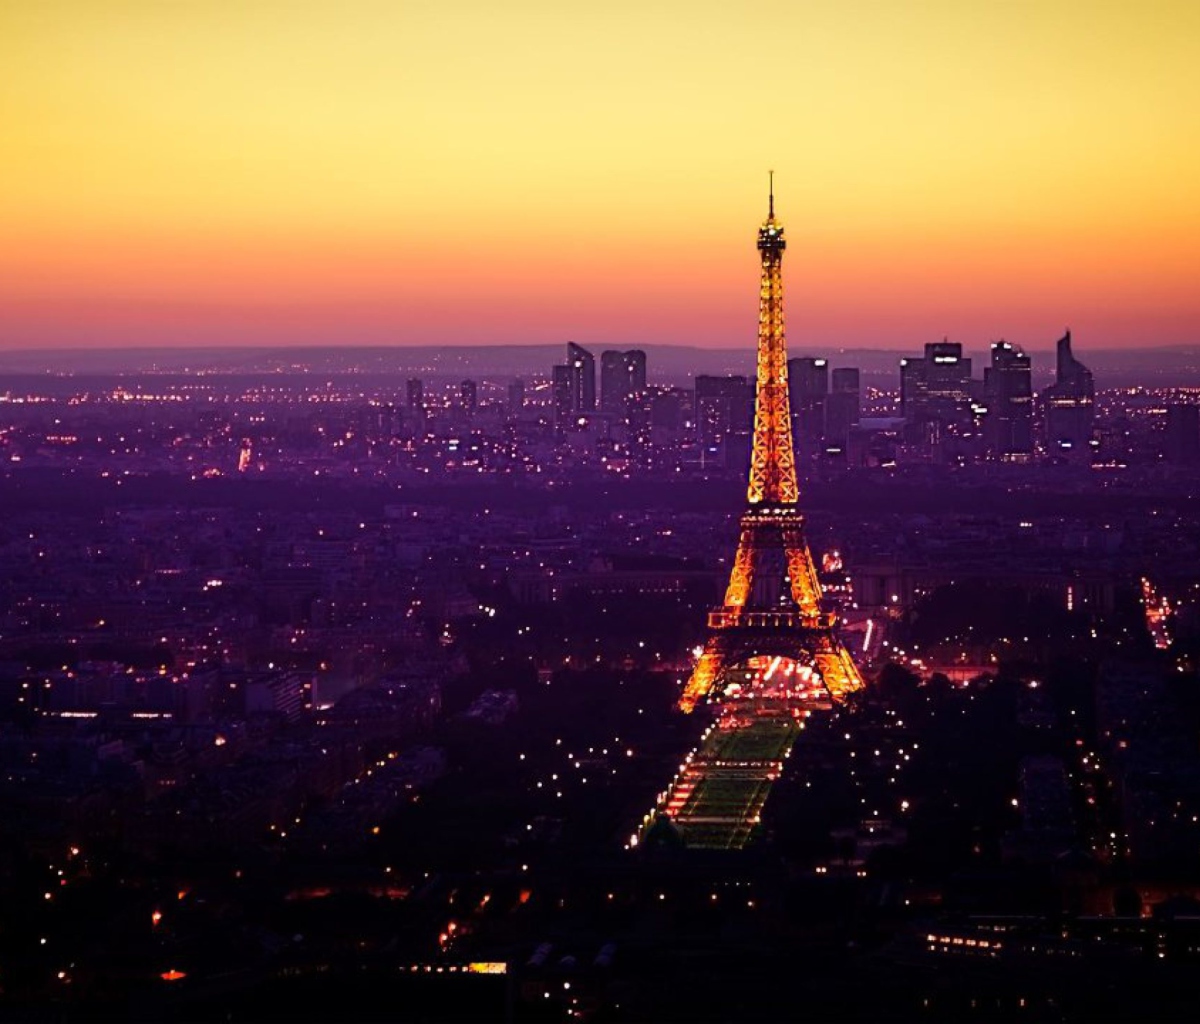 Das Eiffel Tower And Paris City Lights Wallpaper 1200x1024